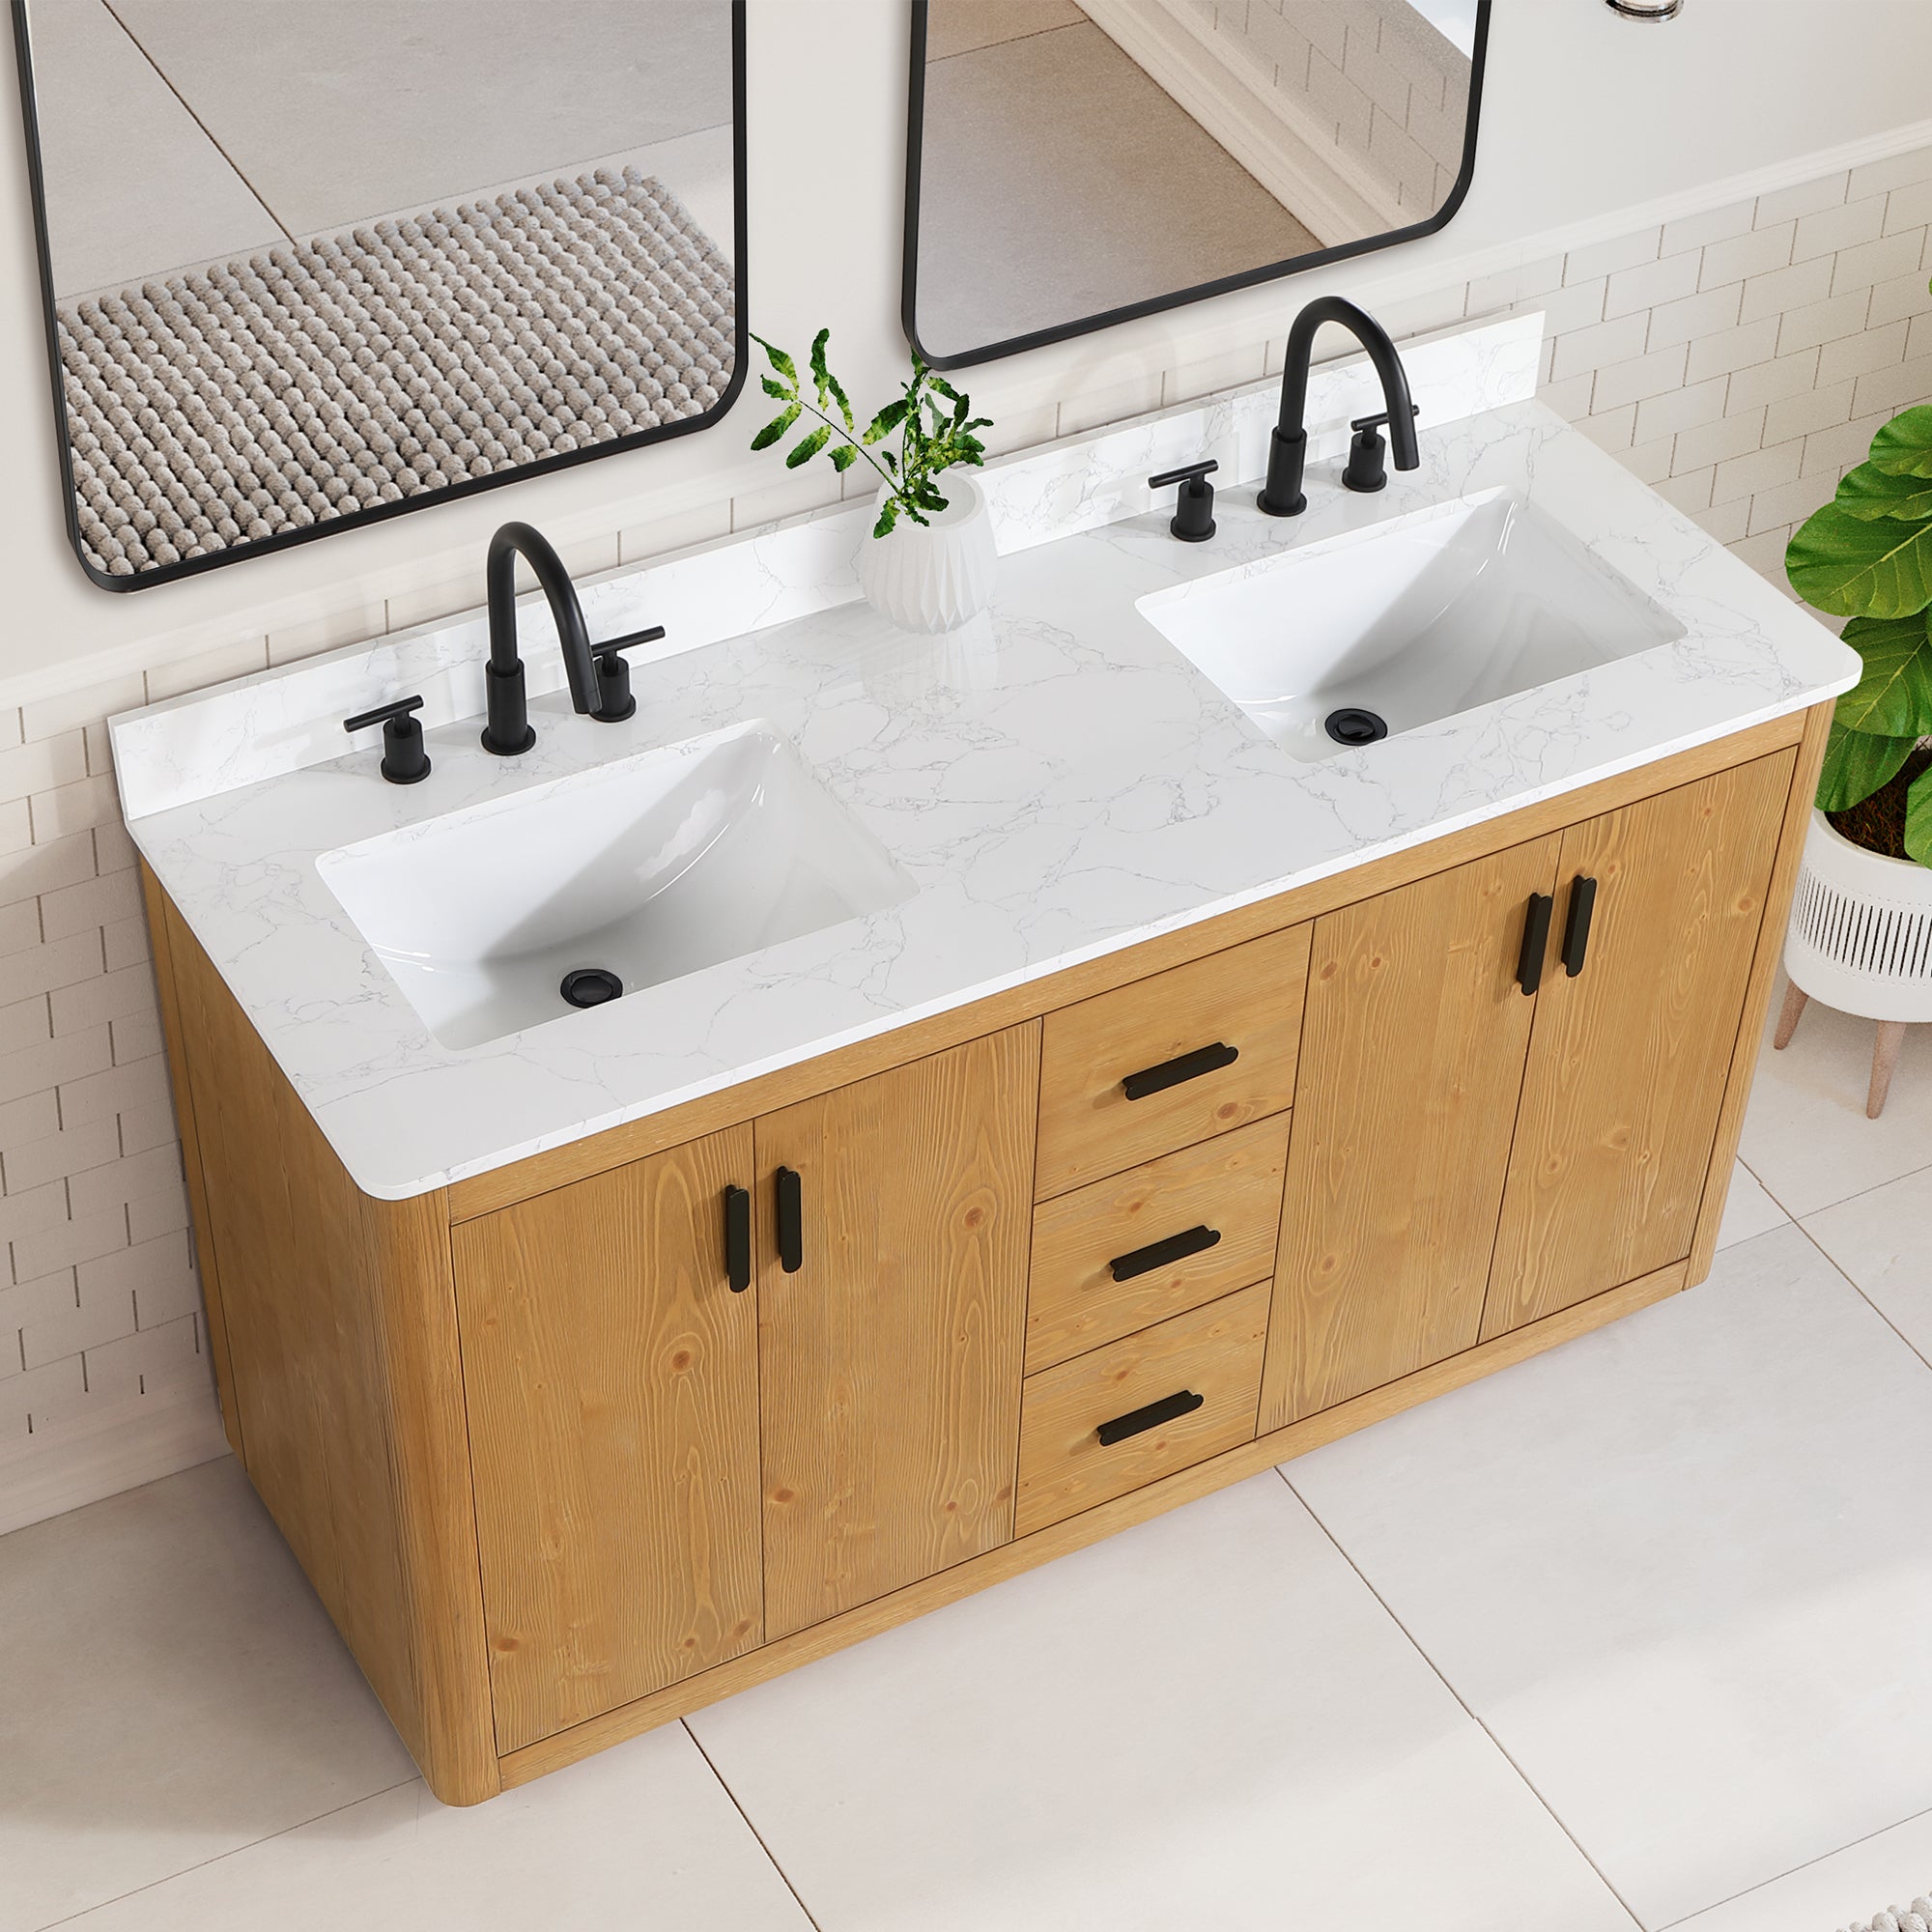 Perla 60" Double Bathroom Vanity with Grain White Composite Stone Countertop